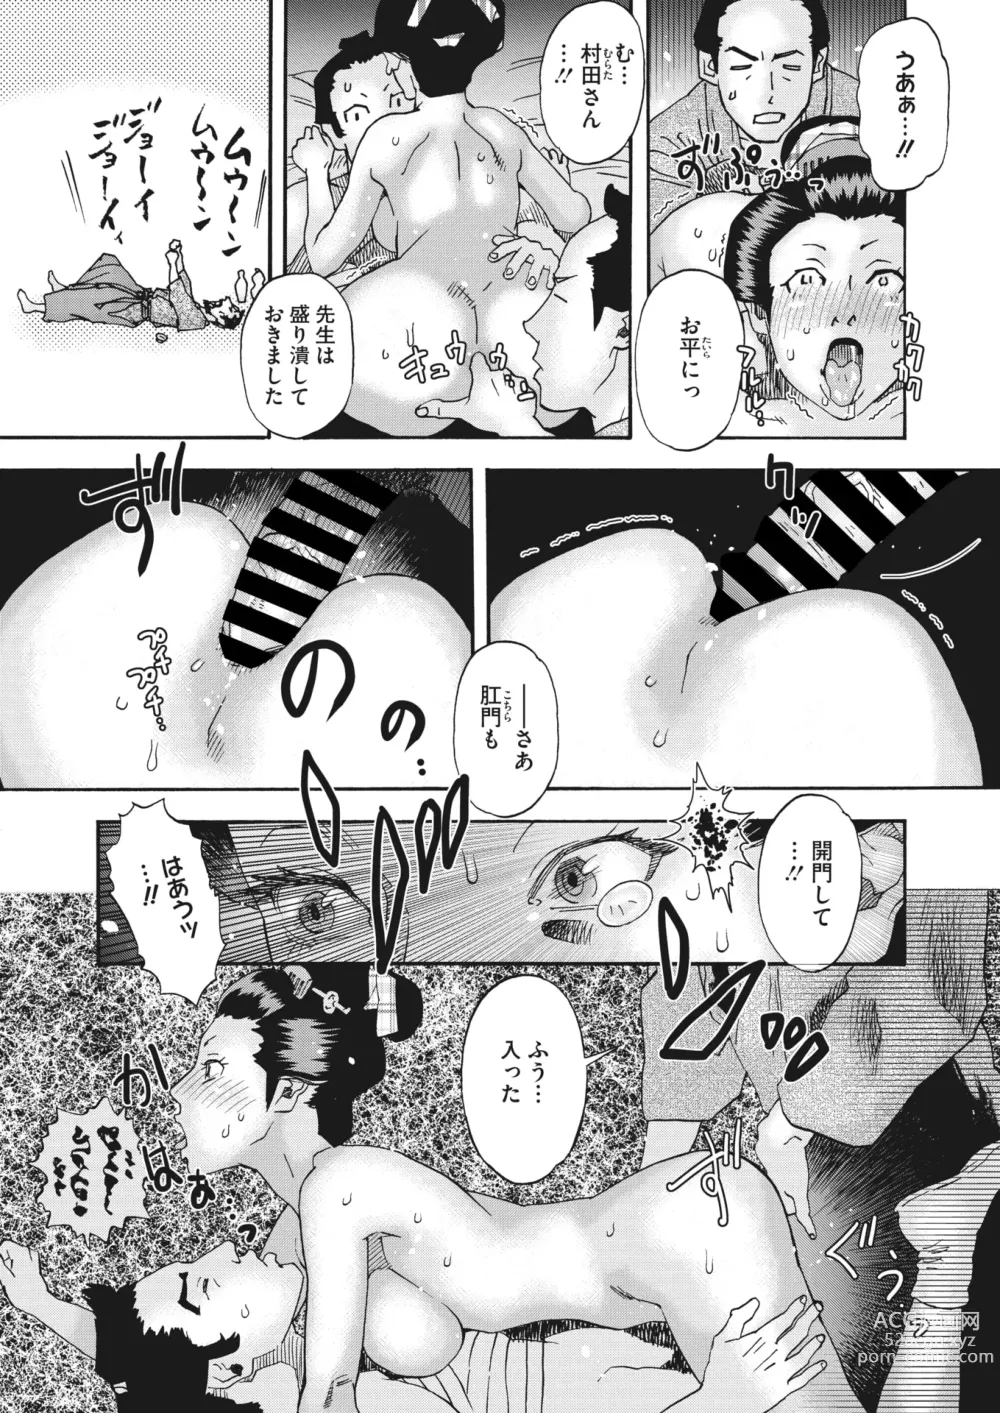 Page 298 of manga COMIC HOTMiLK Koime Vol. 41